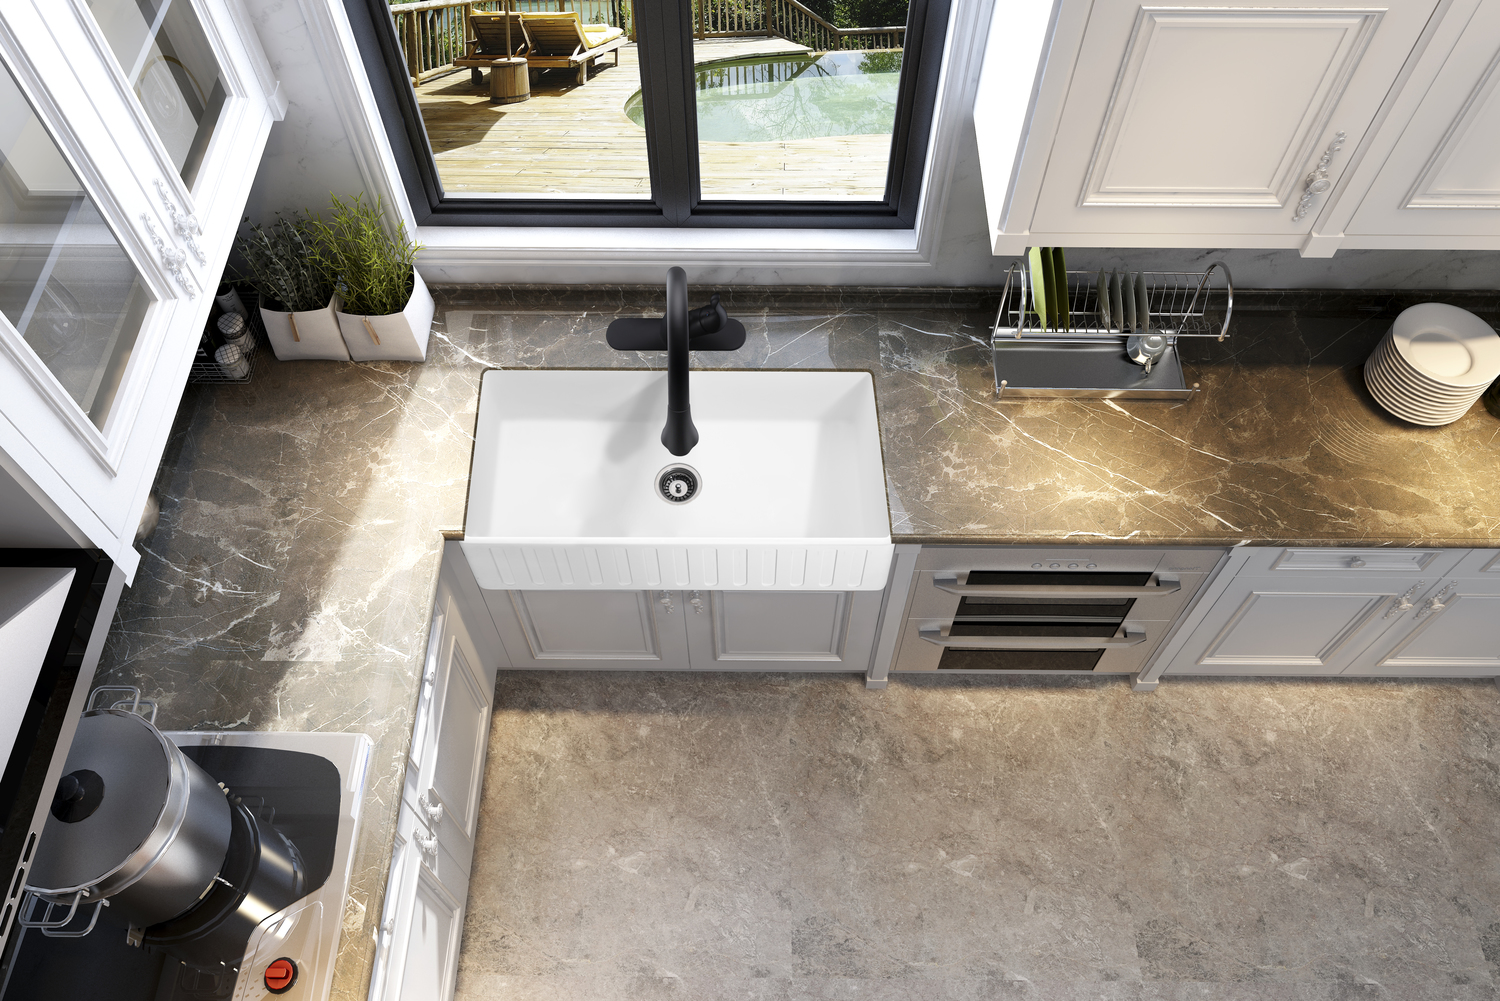 apron sink undermount Anzzi KITCHEN - Kitchen Sinks - Farmhouse - Man Made Stone White